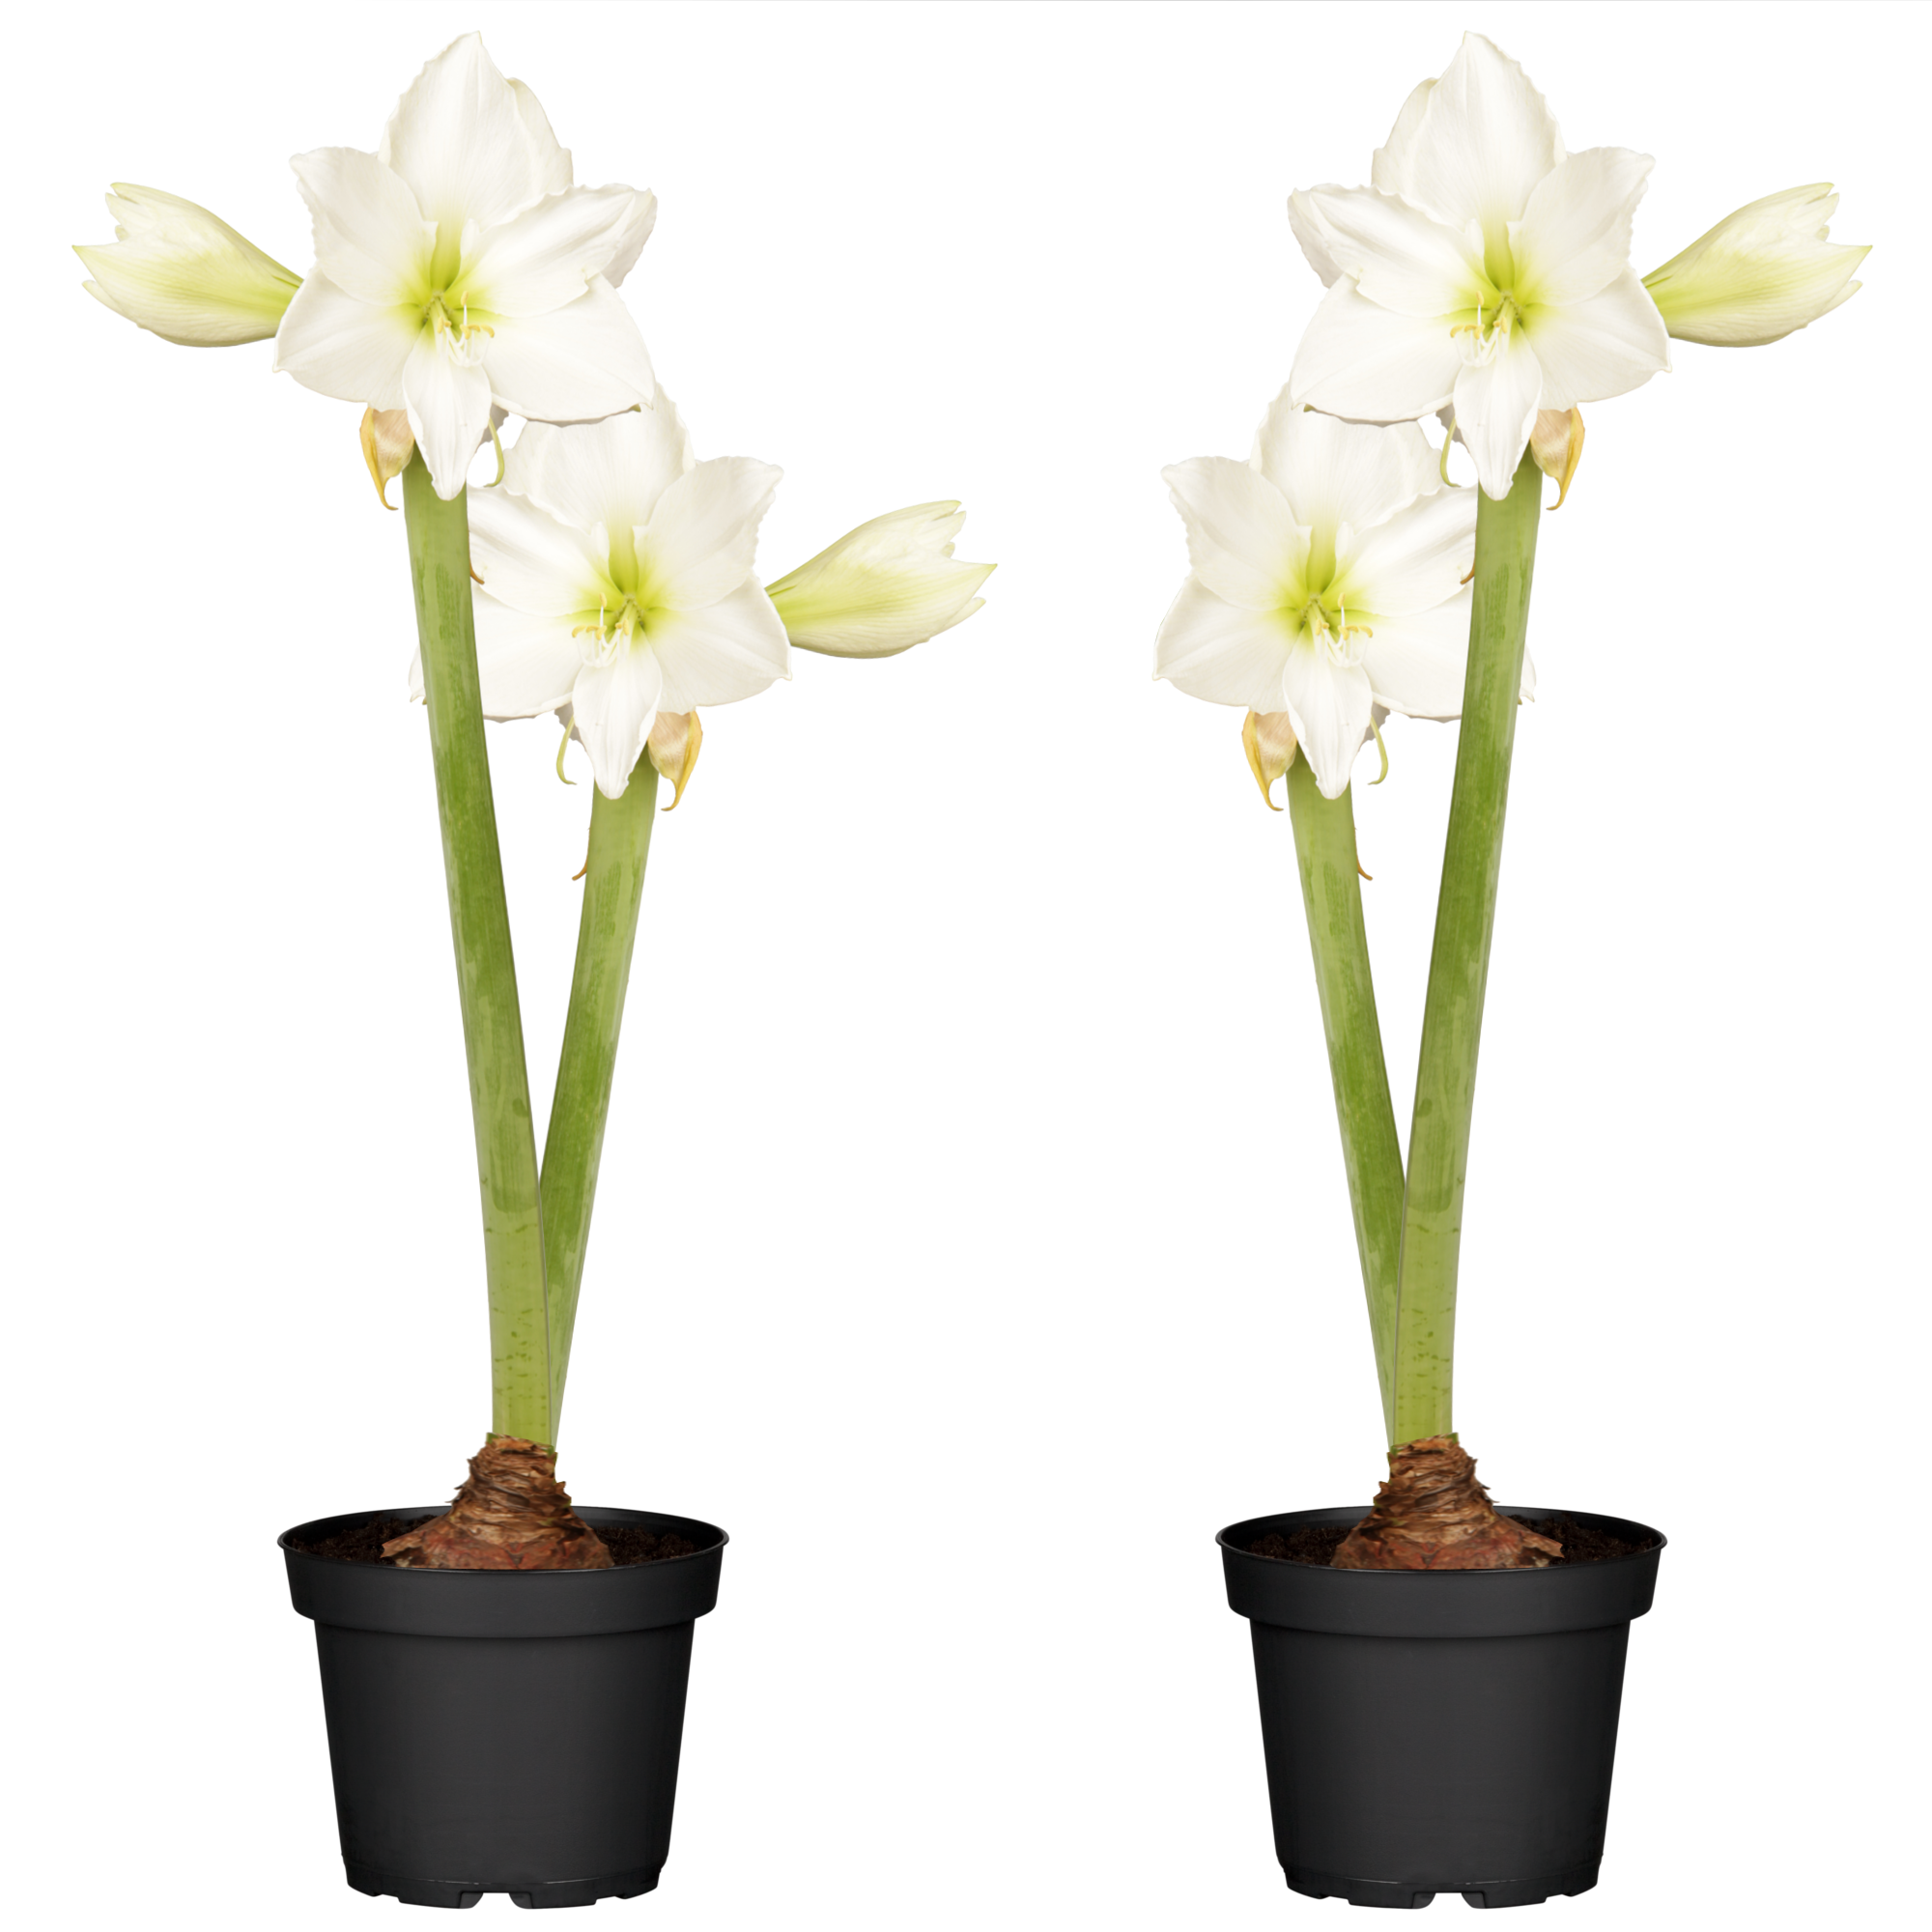 Amaryllis mit 2 Trieben weiß 12 cm Topf, 2er-Set + product picture